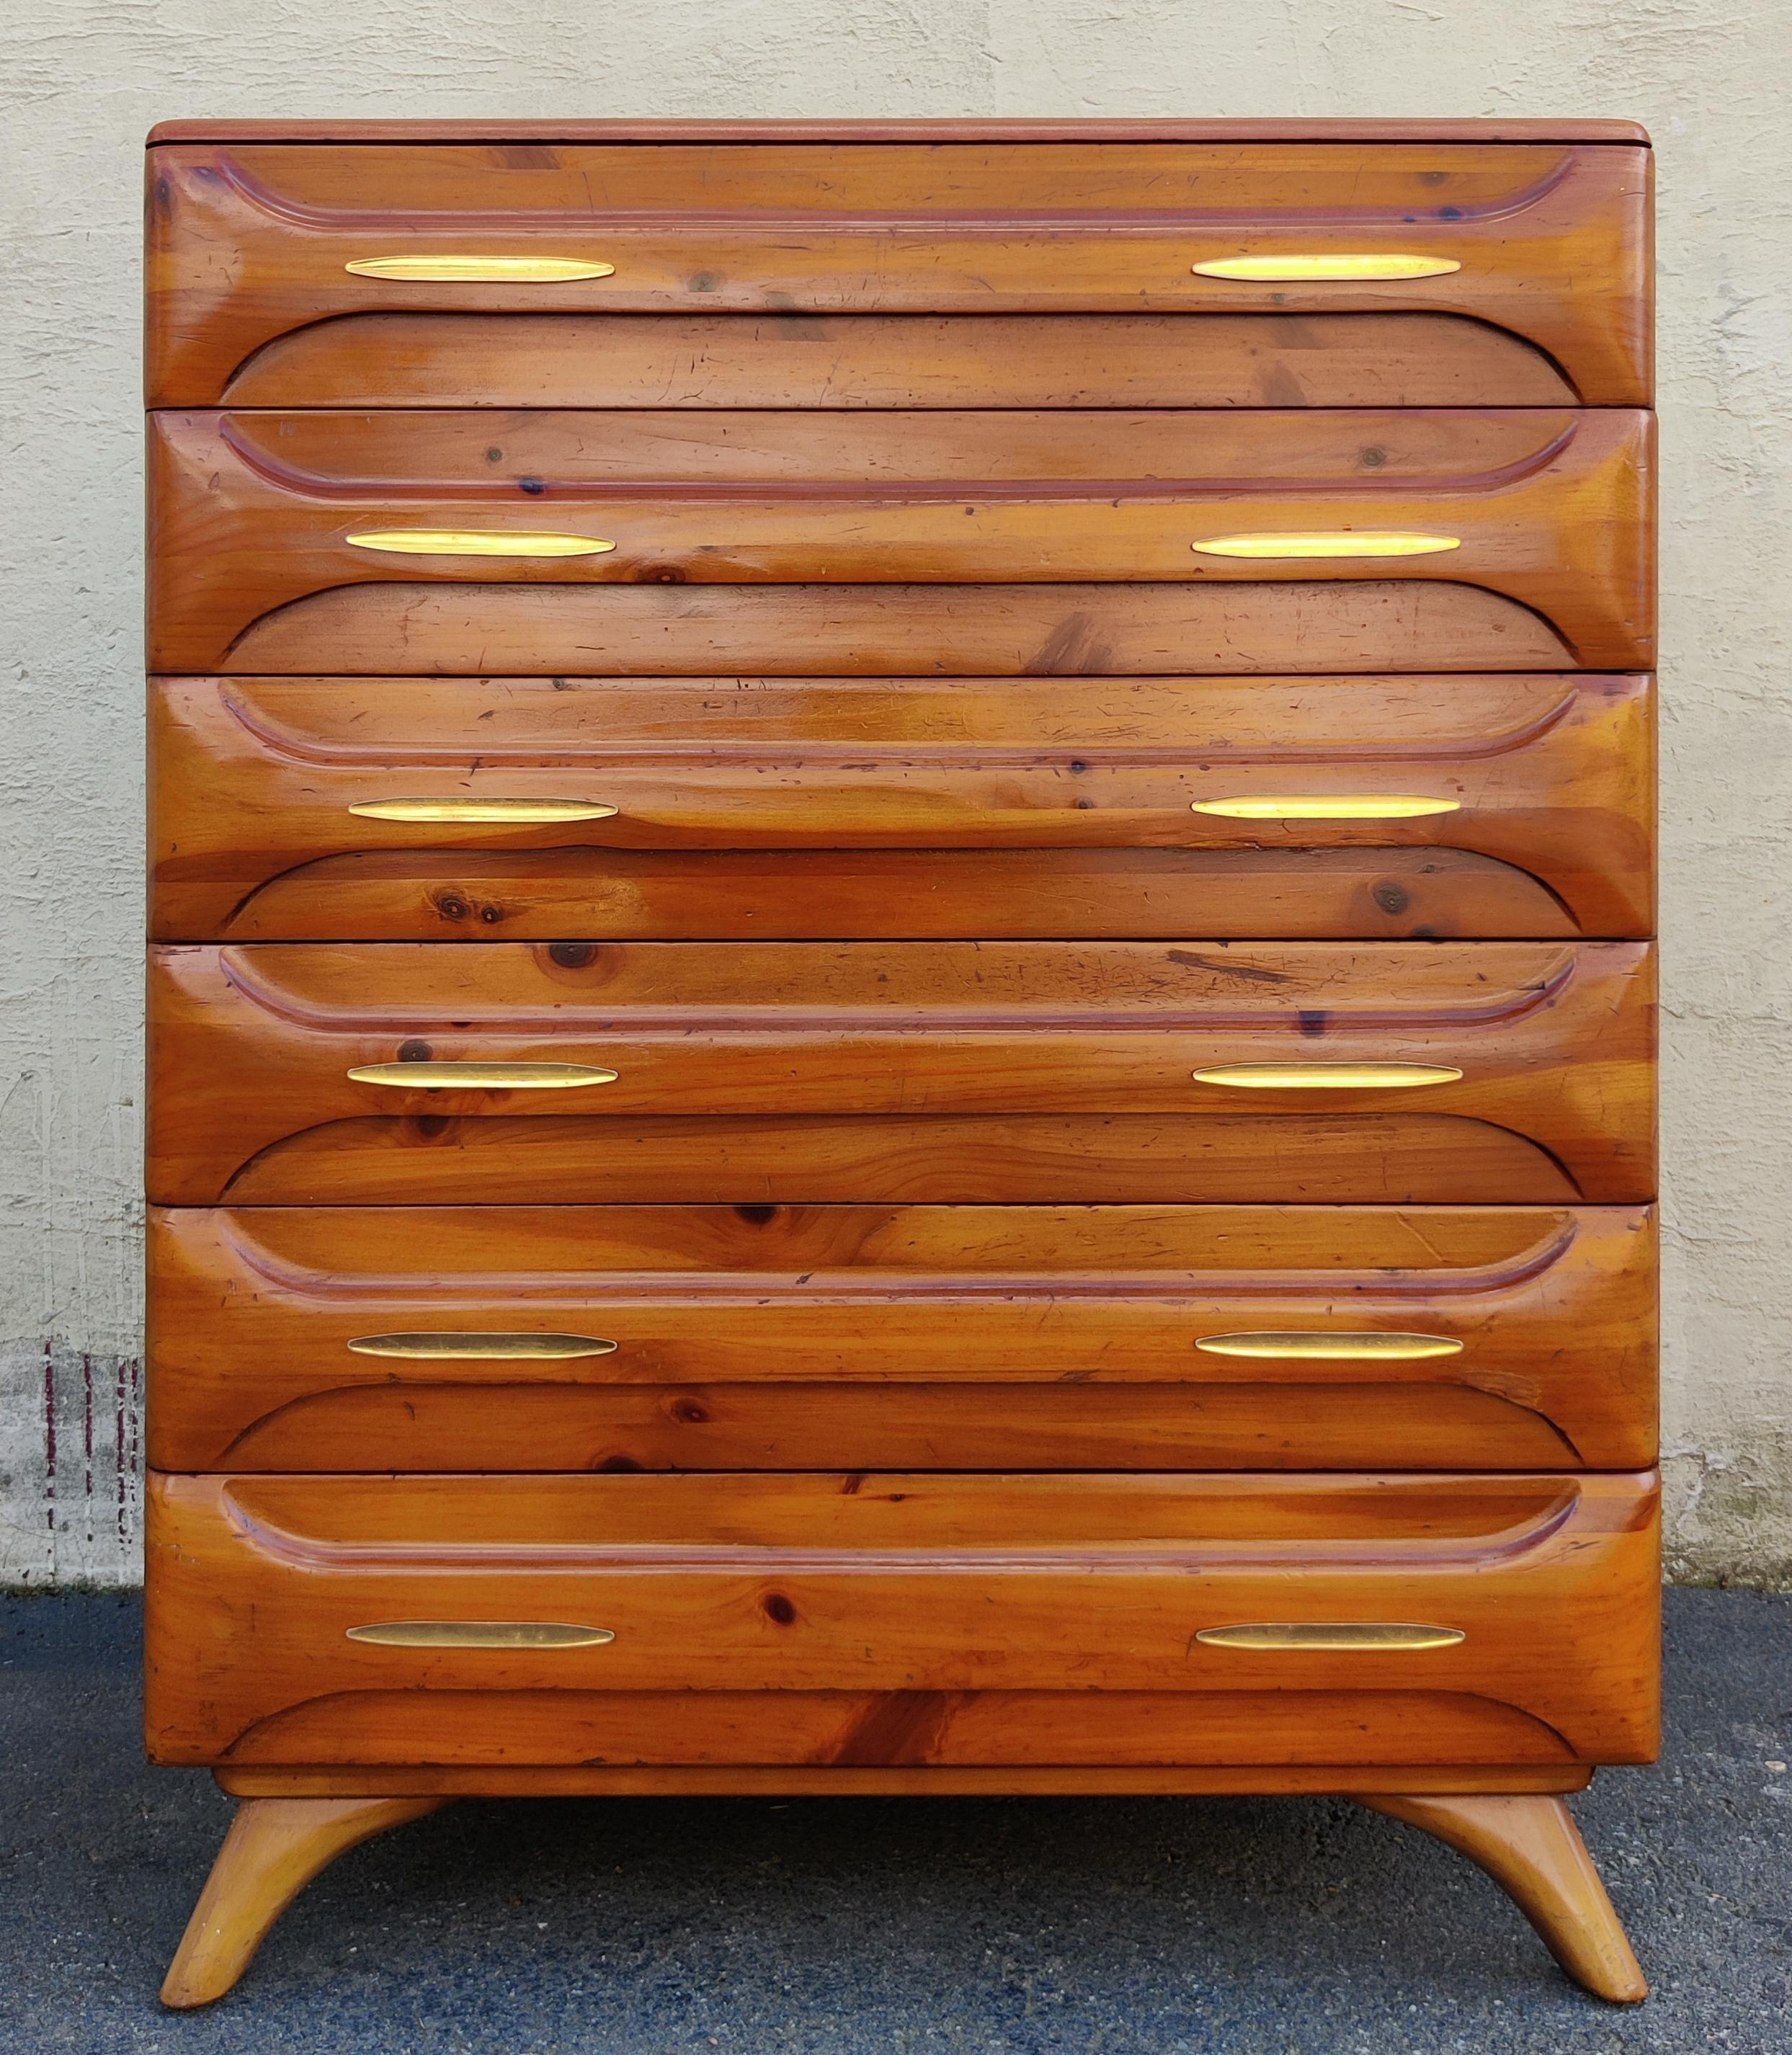 Cette grande commode a été produite dans les années 1970 par la Franklin Shockey Company pour sa ligne de meubles en pin sculpté. Construite en pin massif, cette commode a une couleur claire et chaude de pin doré avec une finition vernie satinée.